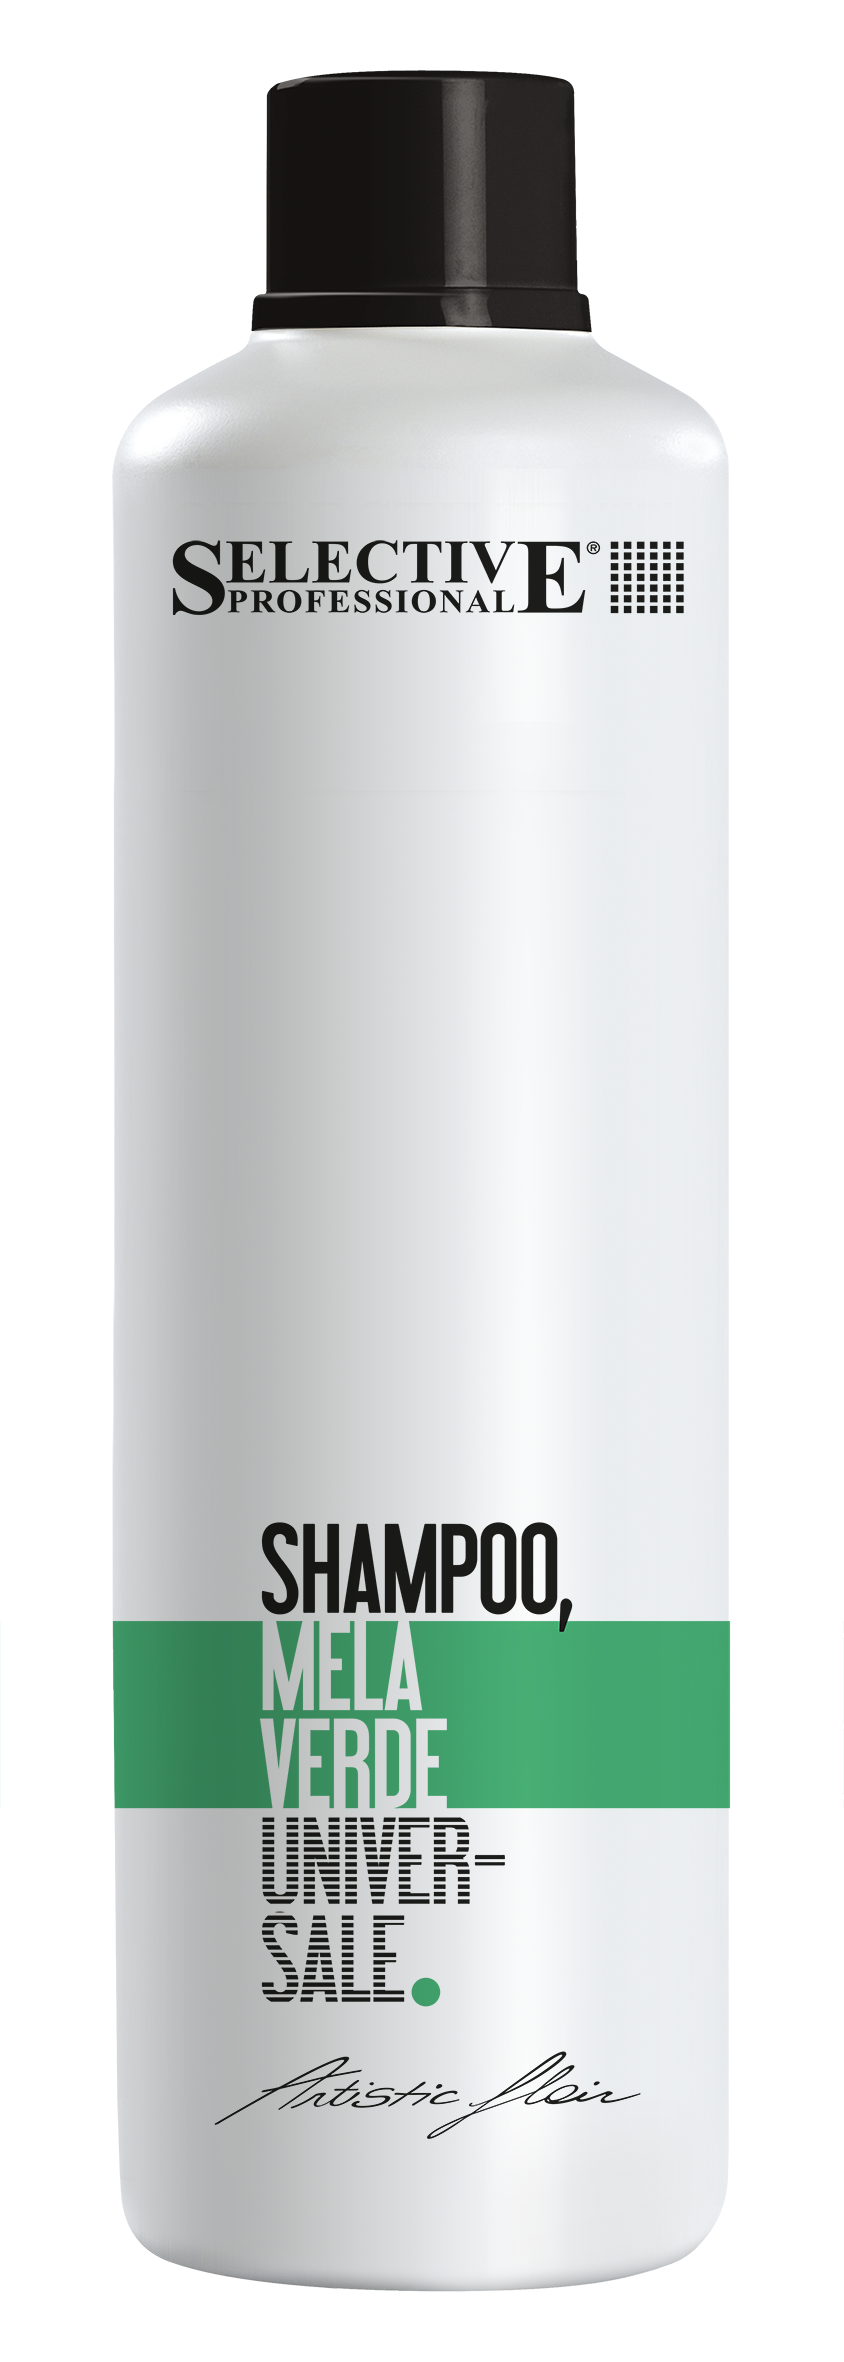 Шампуни для волос:  SELECTIVE PROFESSIONAL -  Шампунь Зелёное яблоко для всех типов волос MELA VERDE   (1000 мл)